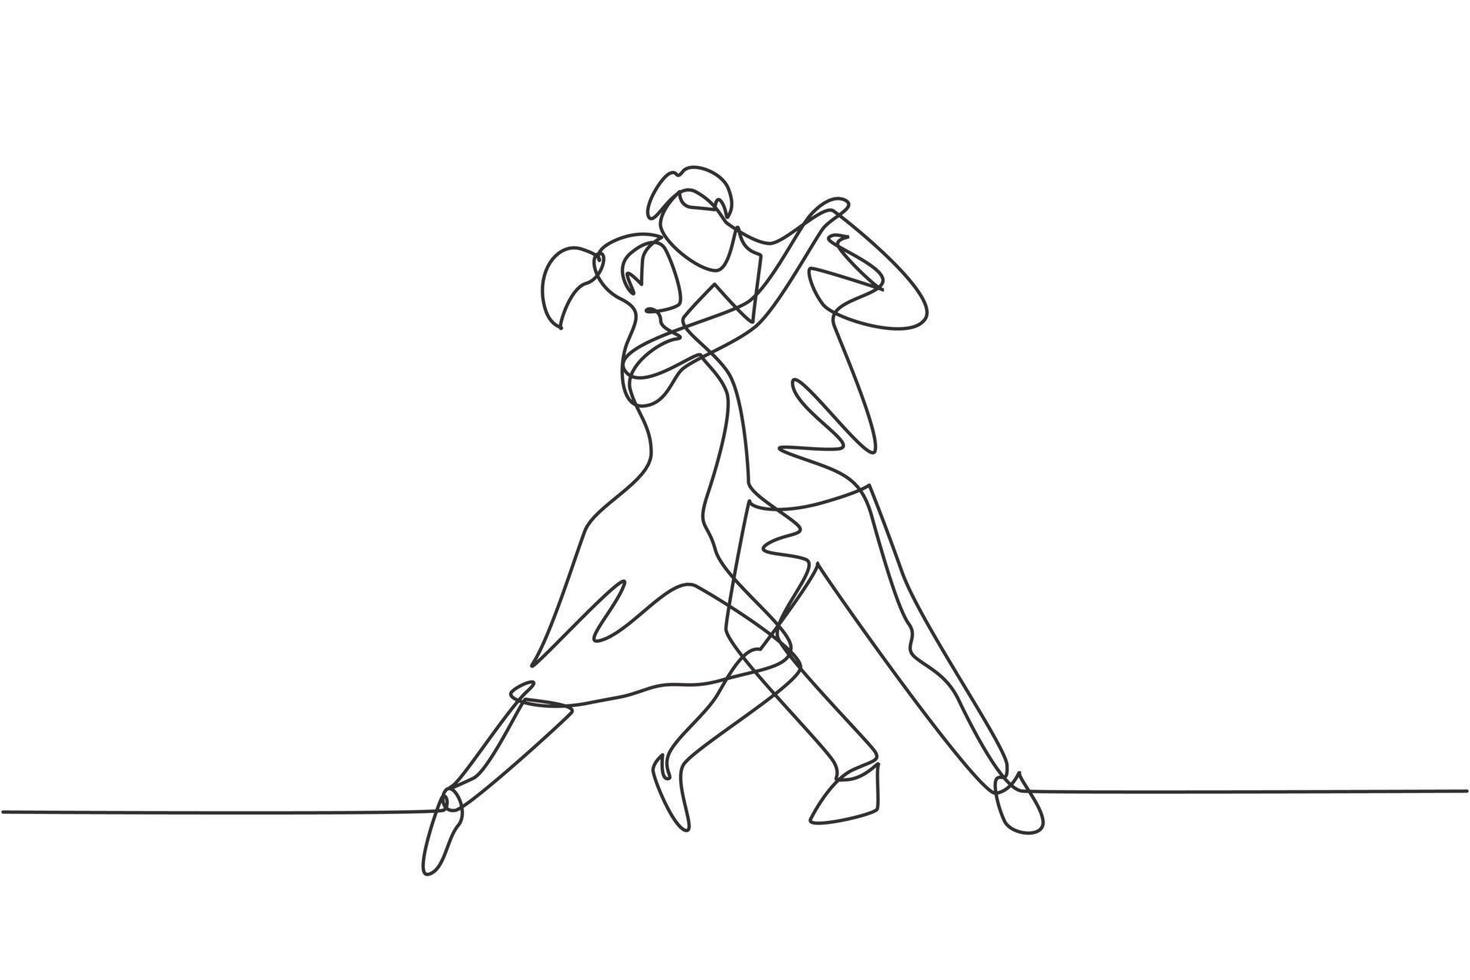 contínua uma linha desenhando pessoas dançando salsa. casais, homem e mulher dançando juntos. pares de dançarinos com estilos de valsa, tango e salsa se movem. ilustração gráfica de vetor de desenho de linha única